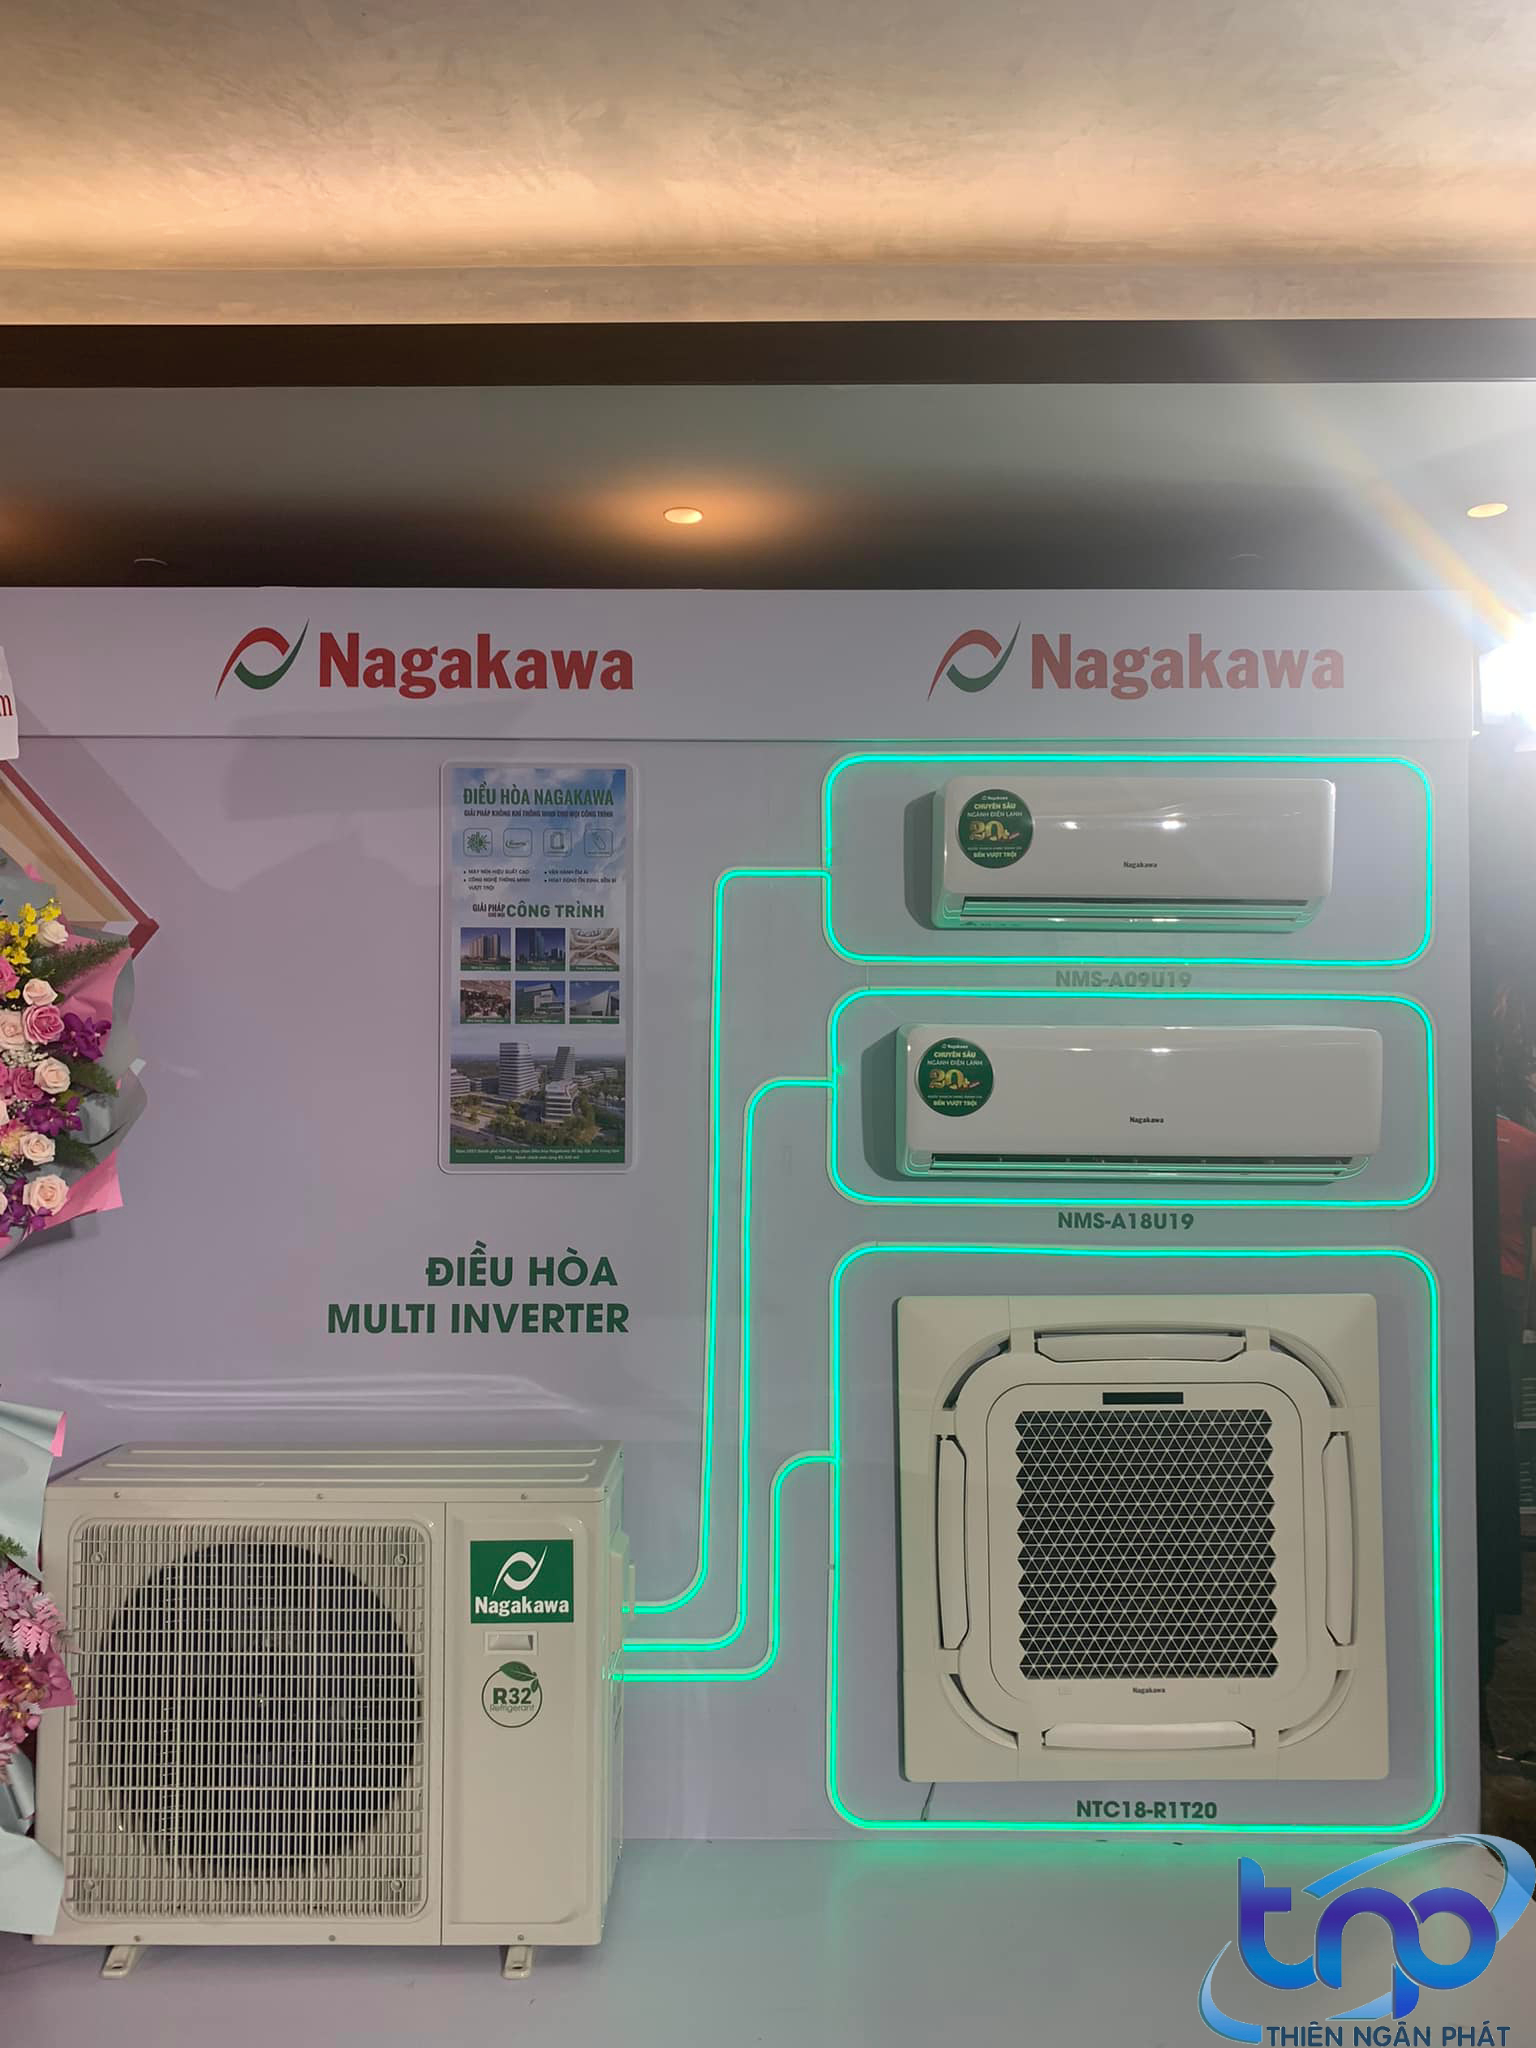 Giới thiệu máy lạnh Nagakawa đến với khách hàng